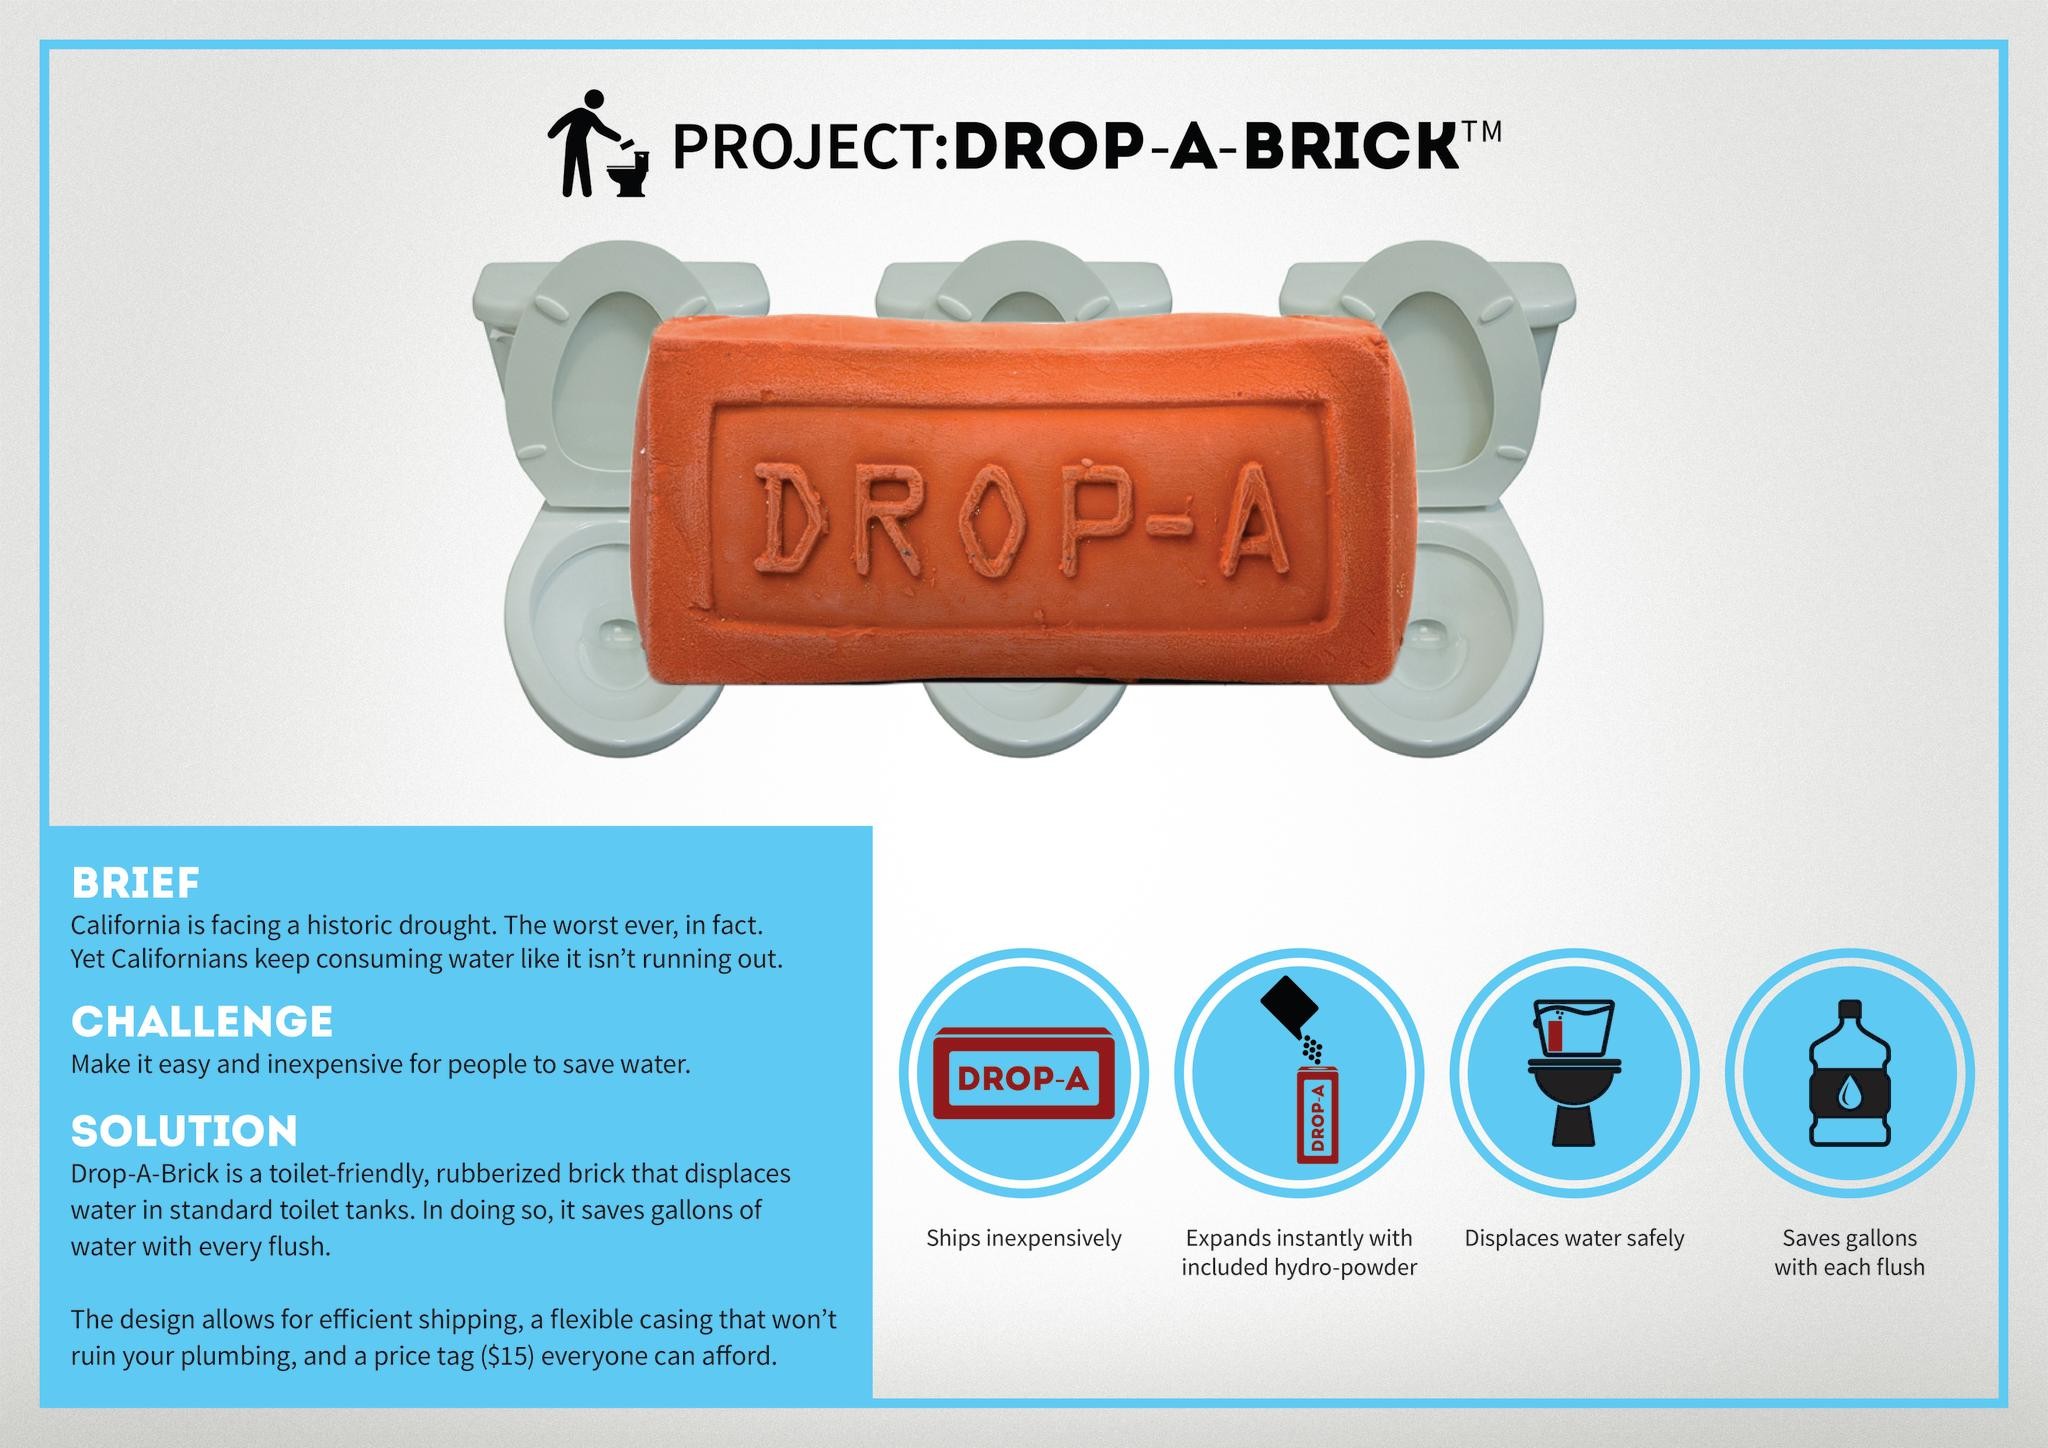 THE DROP-A-BRICK PROJECT